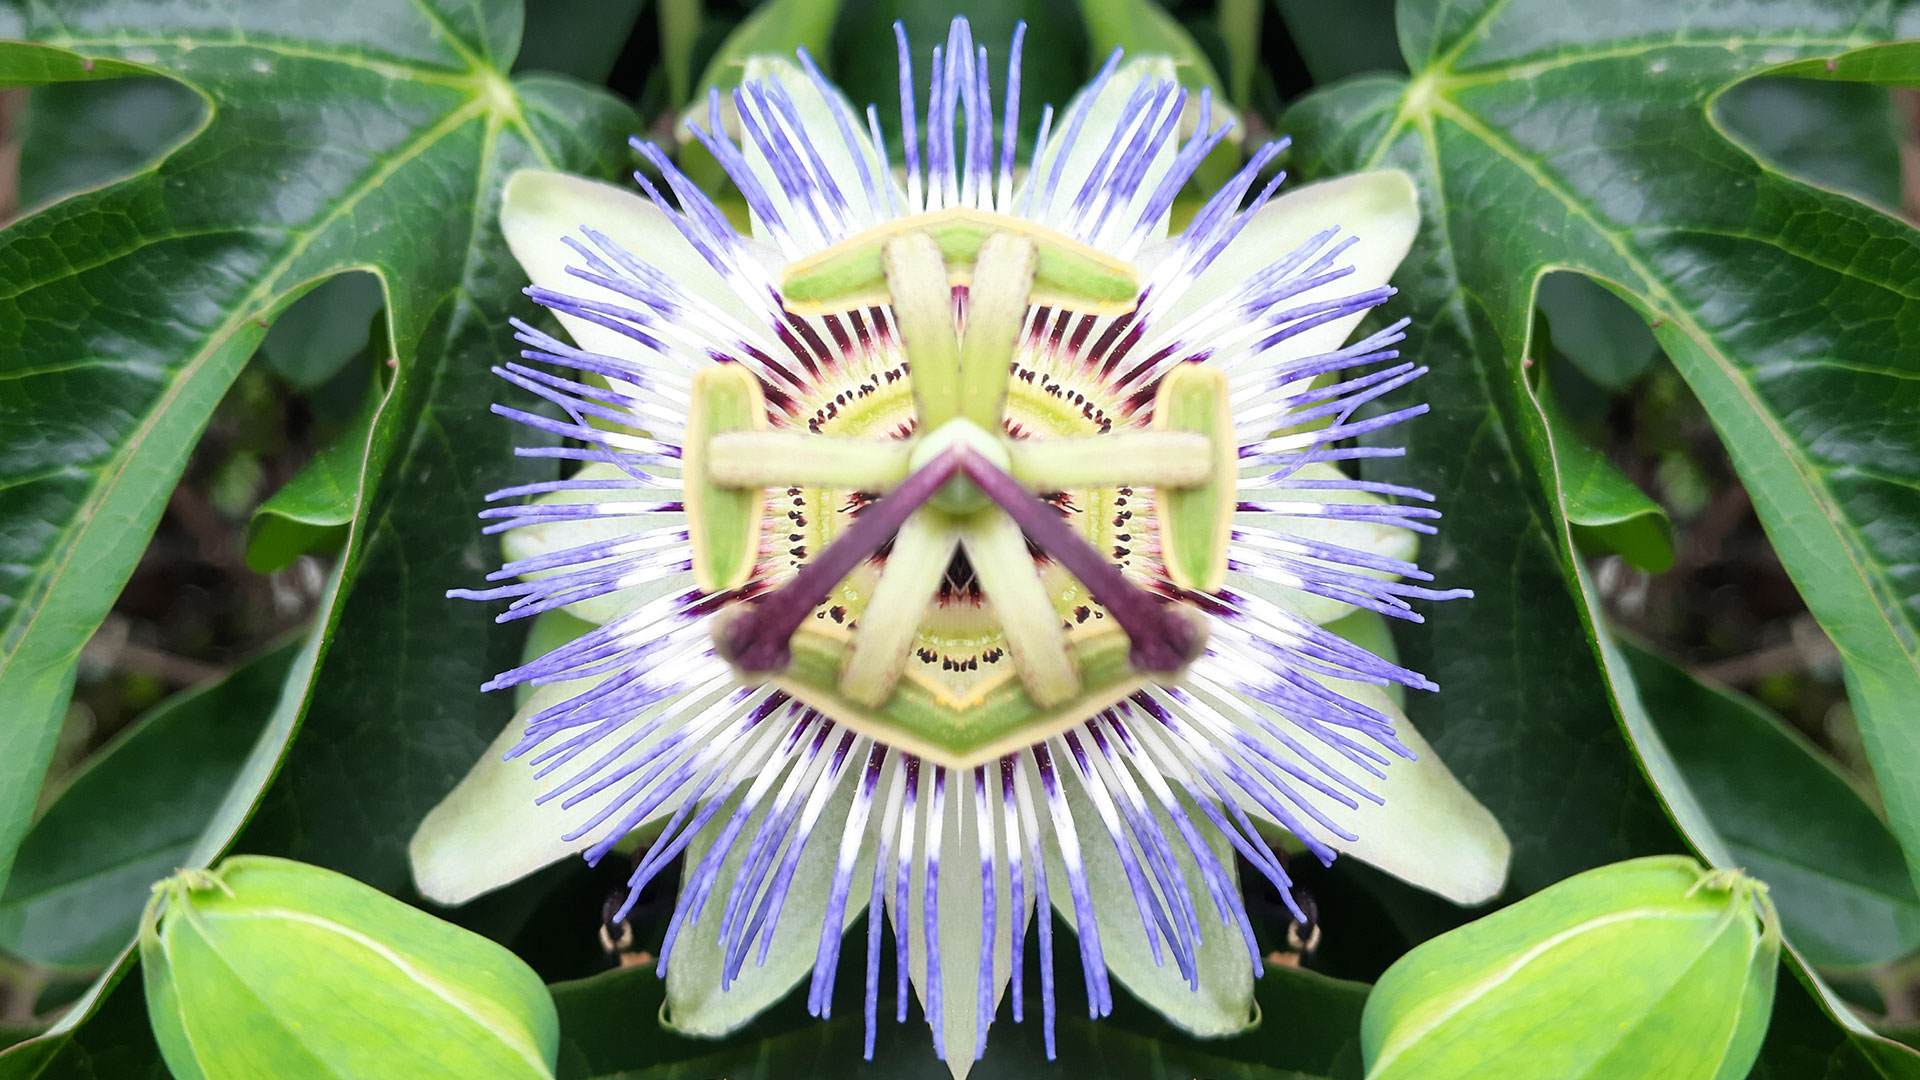 La pasionaria o Passiflora es una enredadera nativa de América, fácilmente reconocible por su distintiva corona, que suele ser de color púrpura, amarillo y blanco (Getty Images)